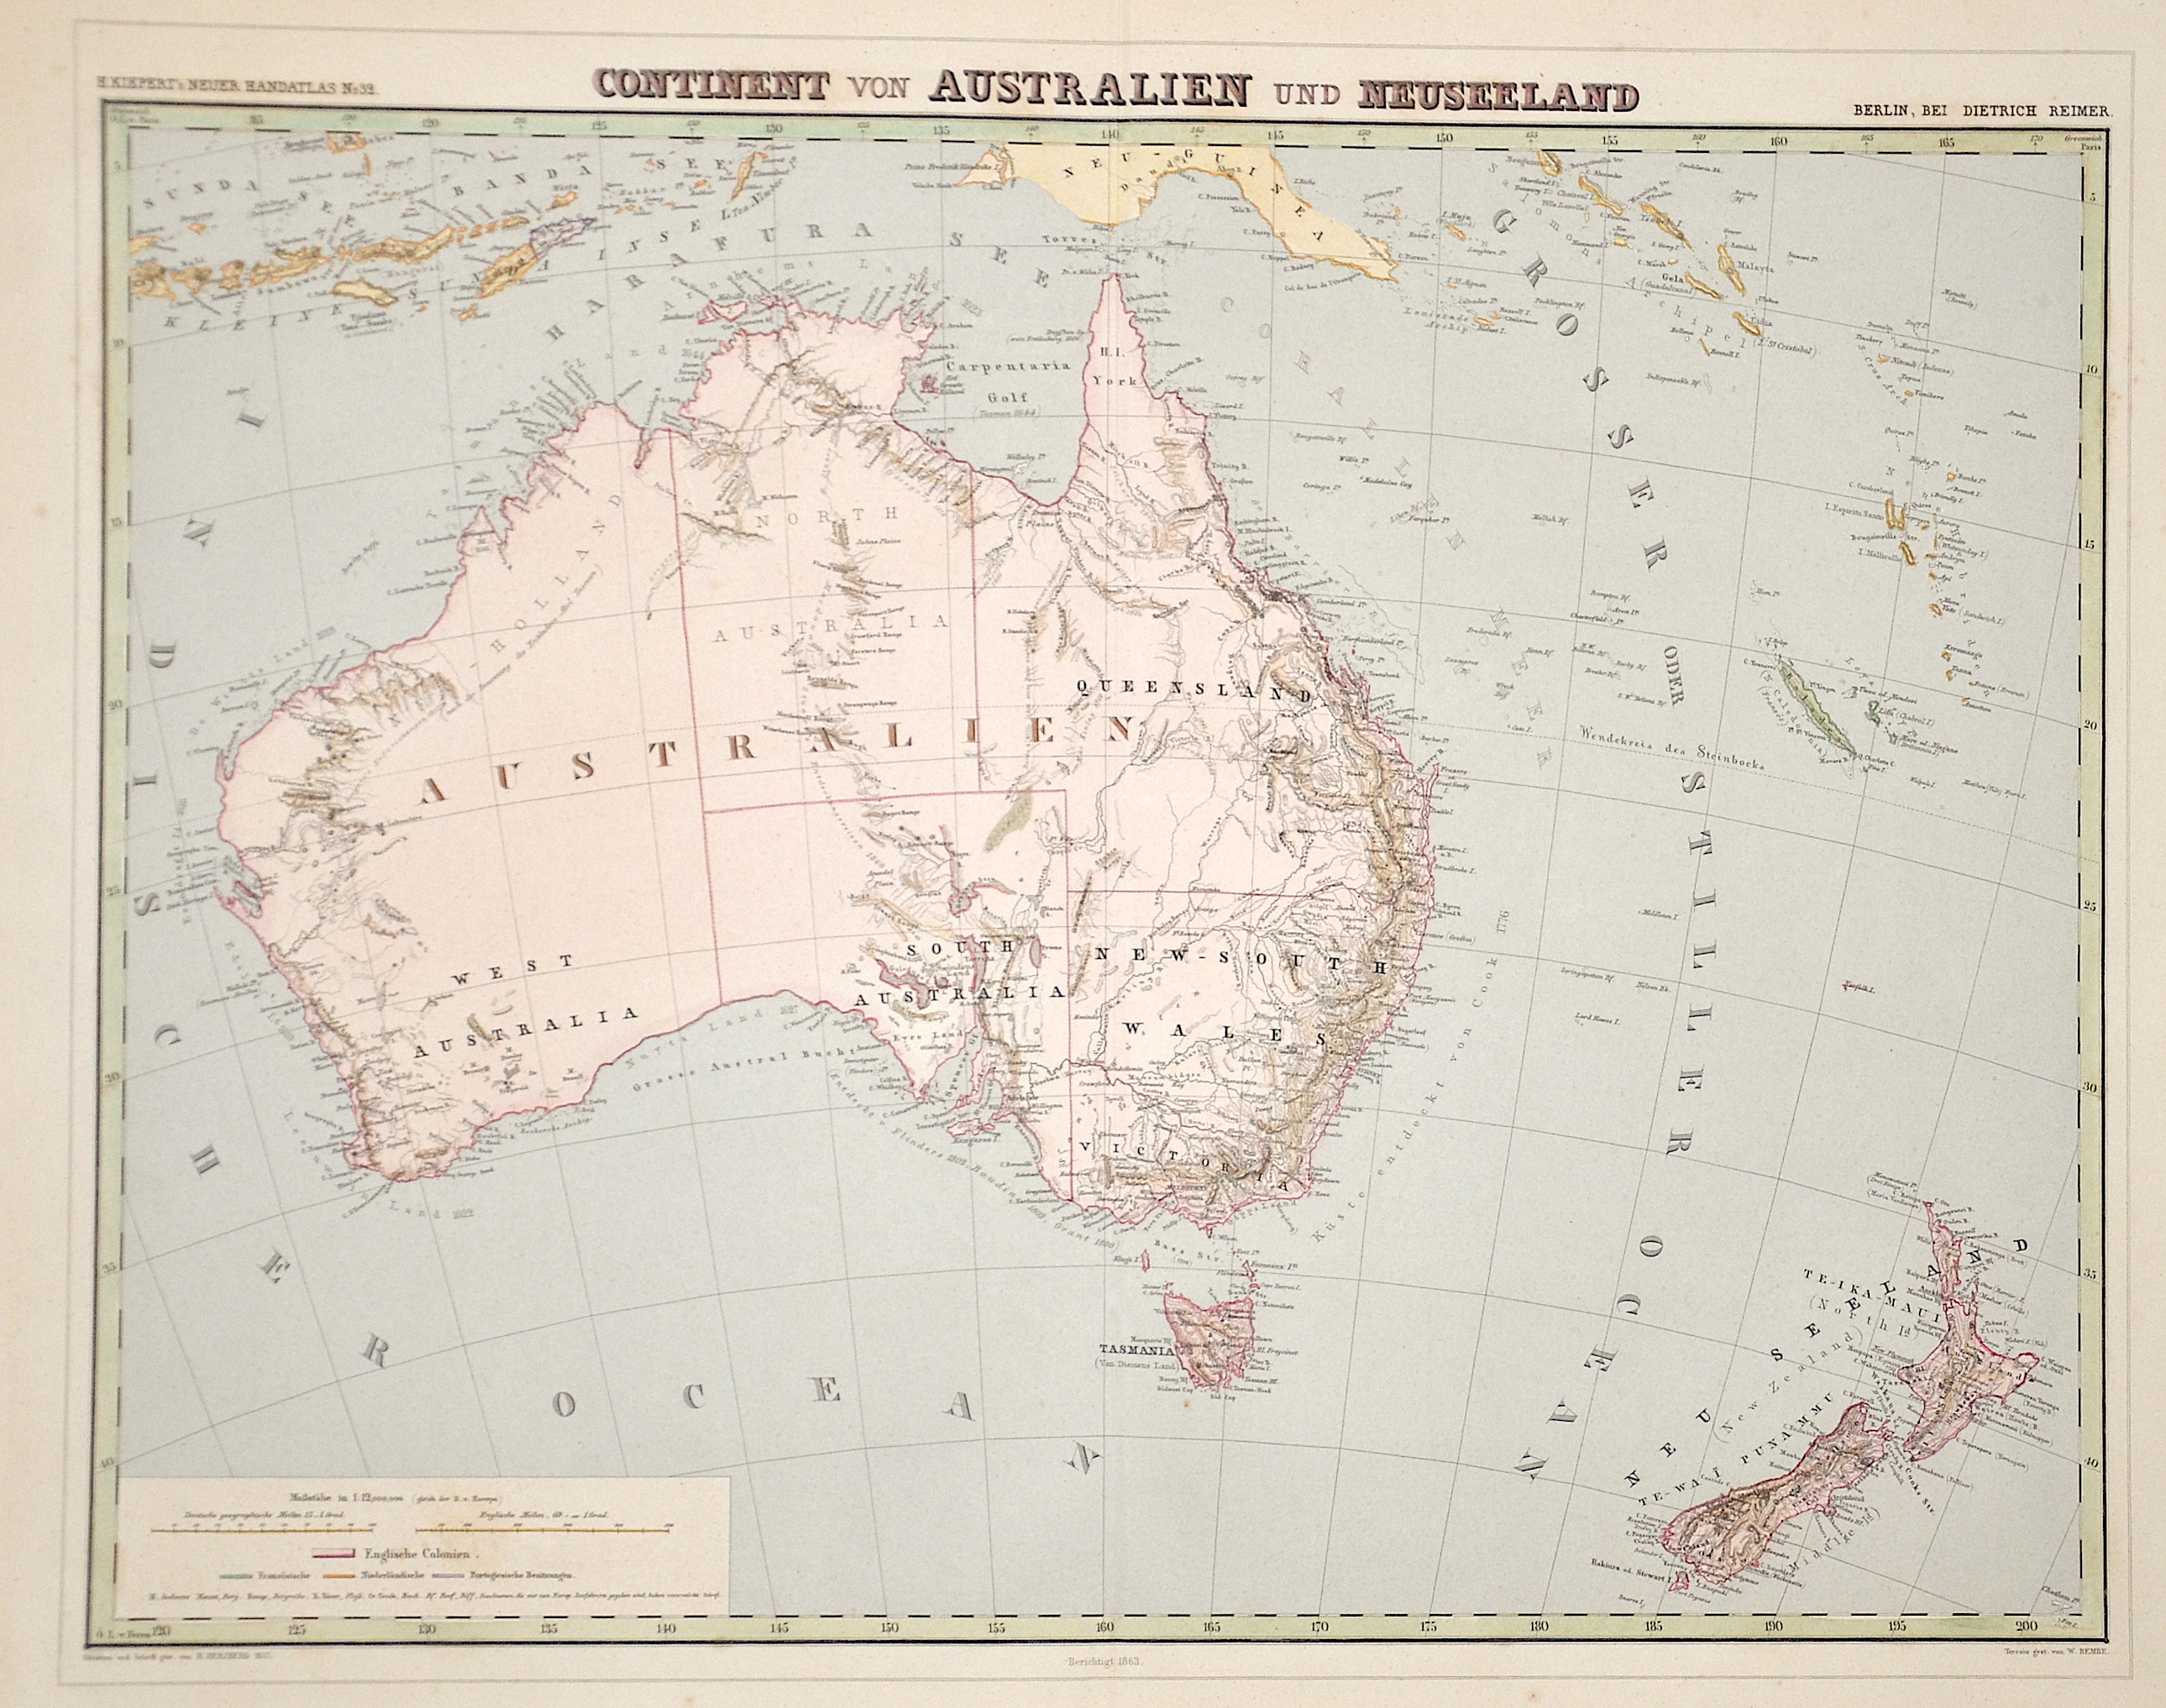 Herzberg H. Continent von Australien und Neuseeland"